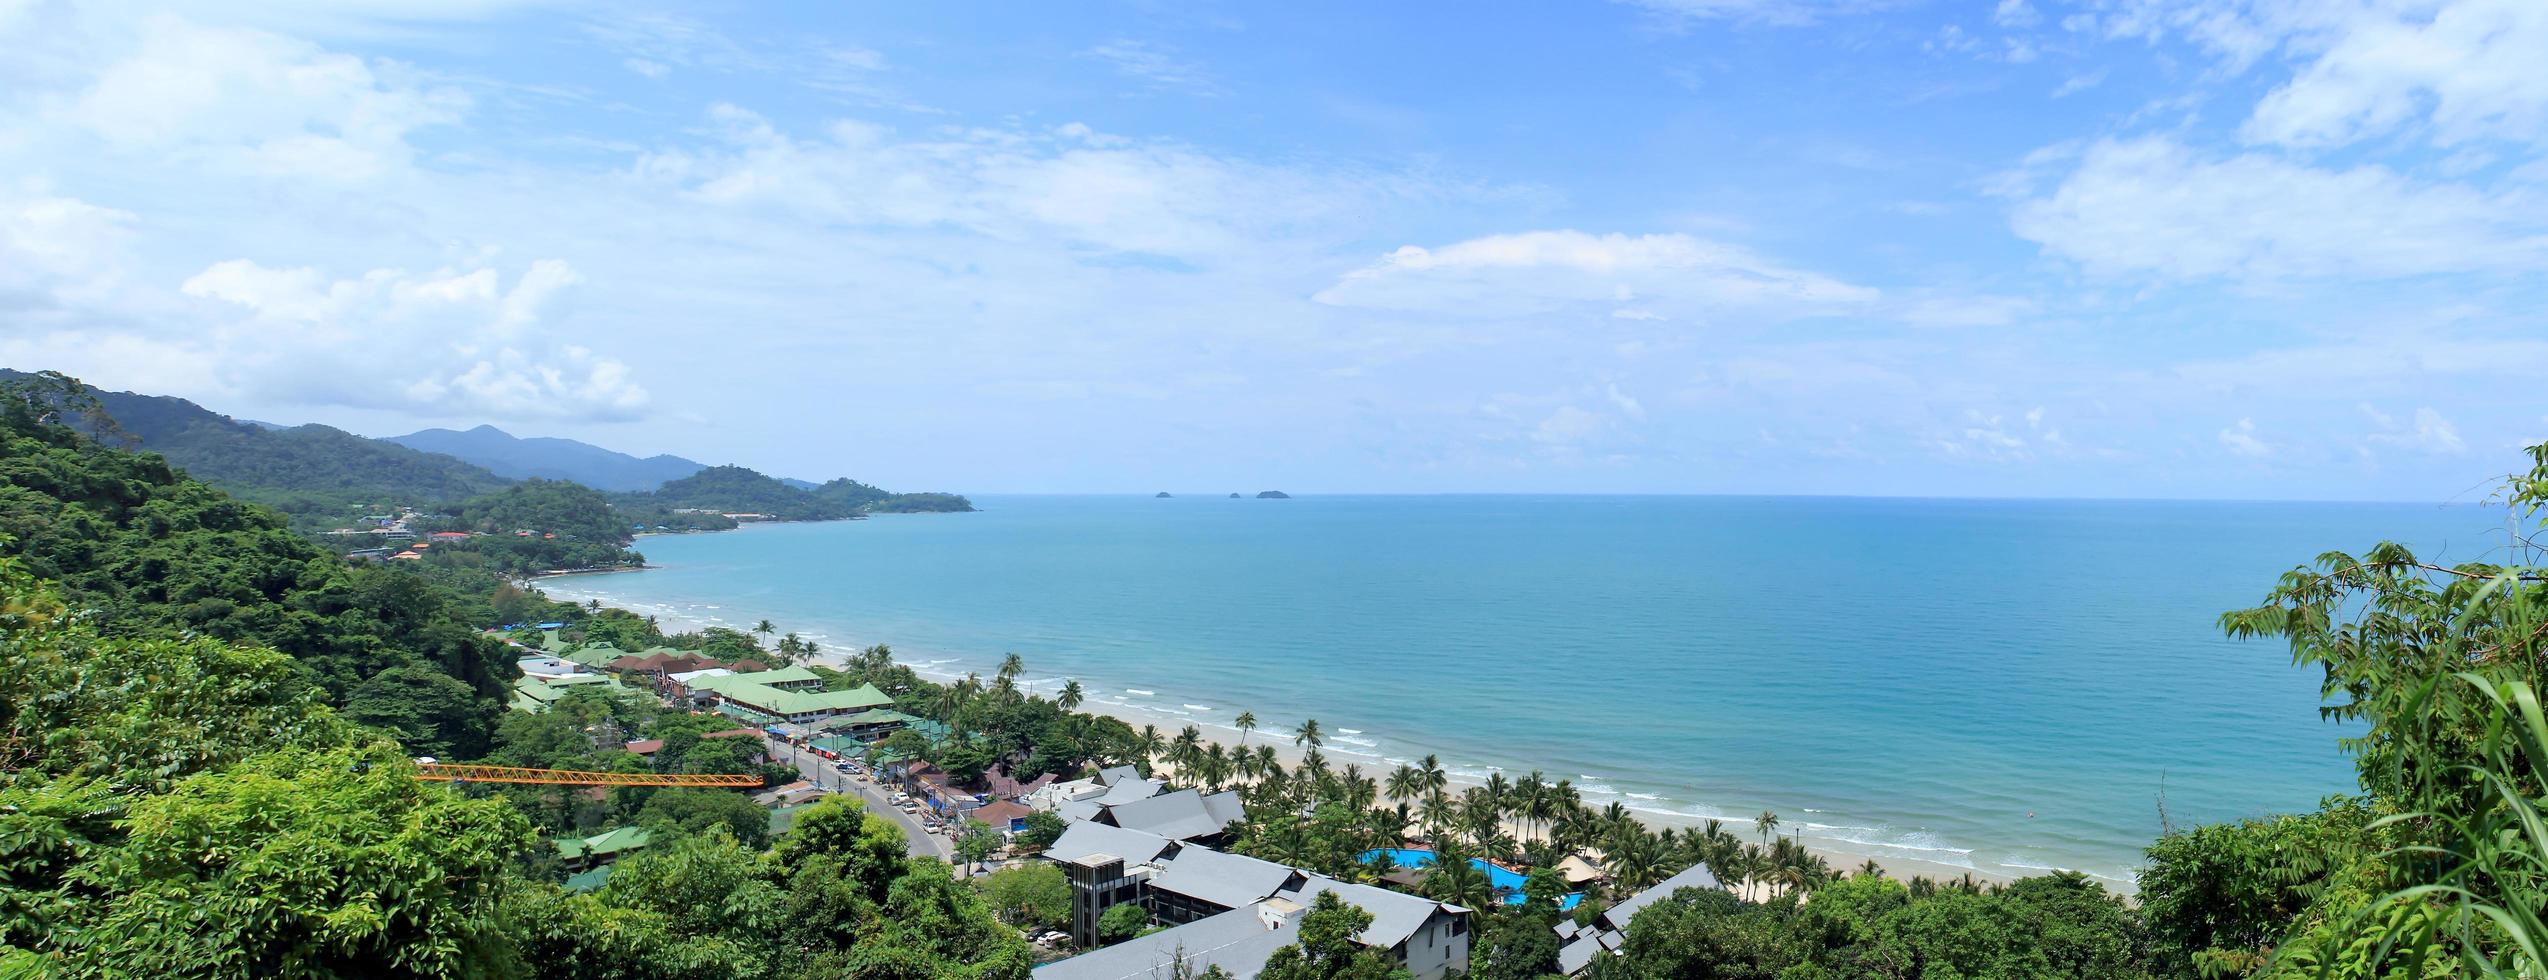 zonnige dag op het tropische strand. provincie tr. Koh Chang-eiland. koninkrijk thailand. panorama foto